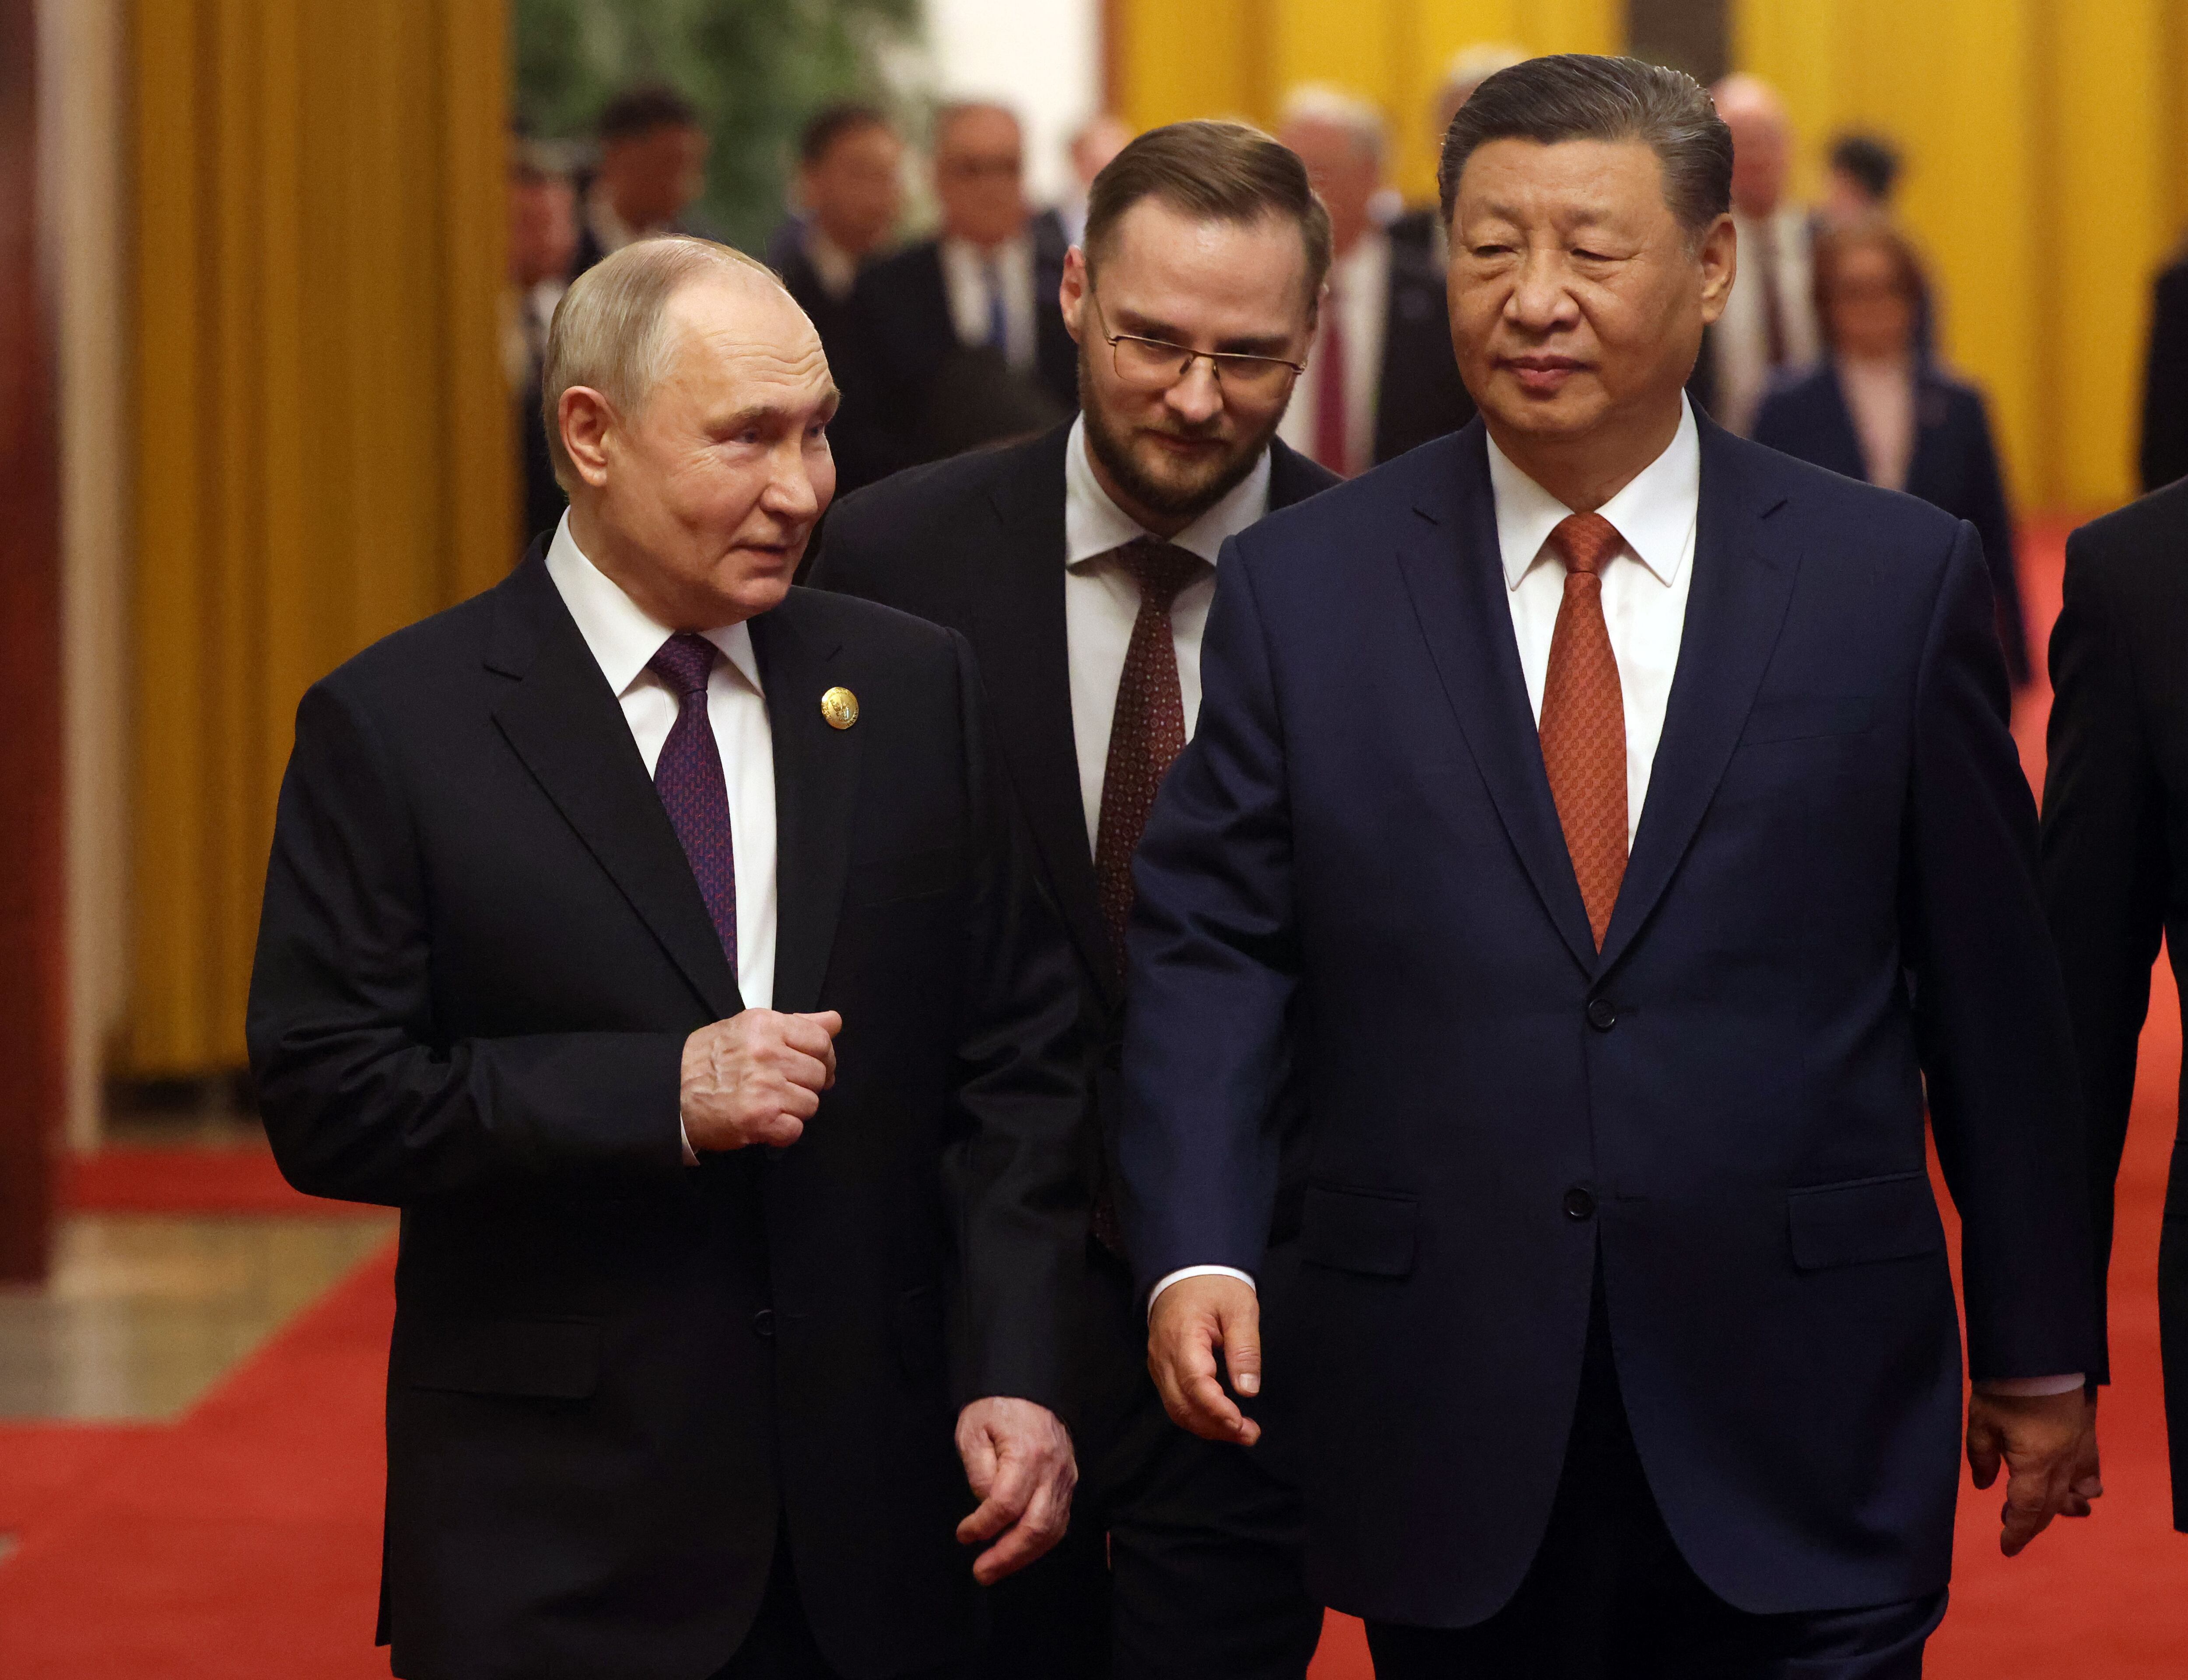 Guerra entre Rusia y Ucrania puede terminar con ‘una sola llamada’ de China, asegura Finlandia